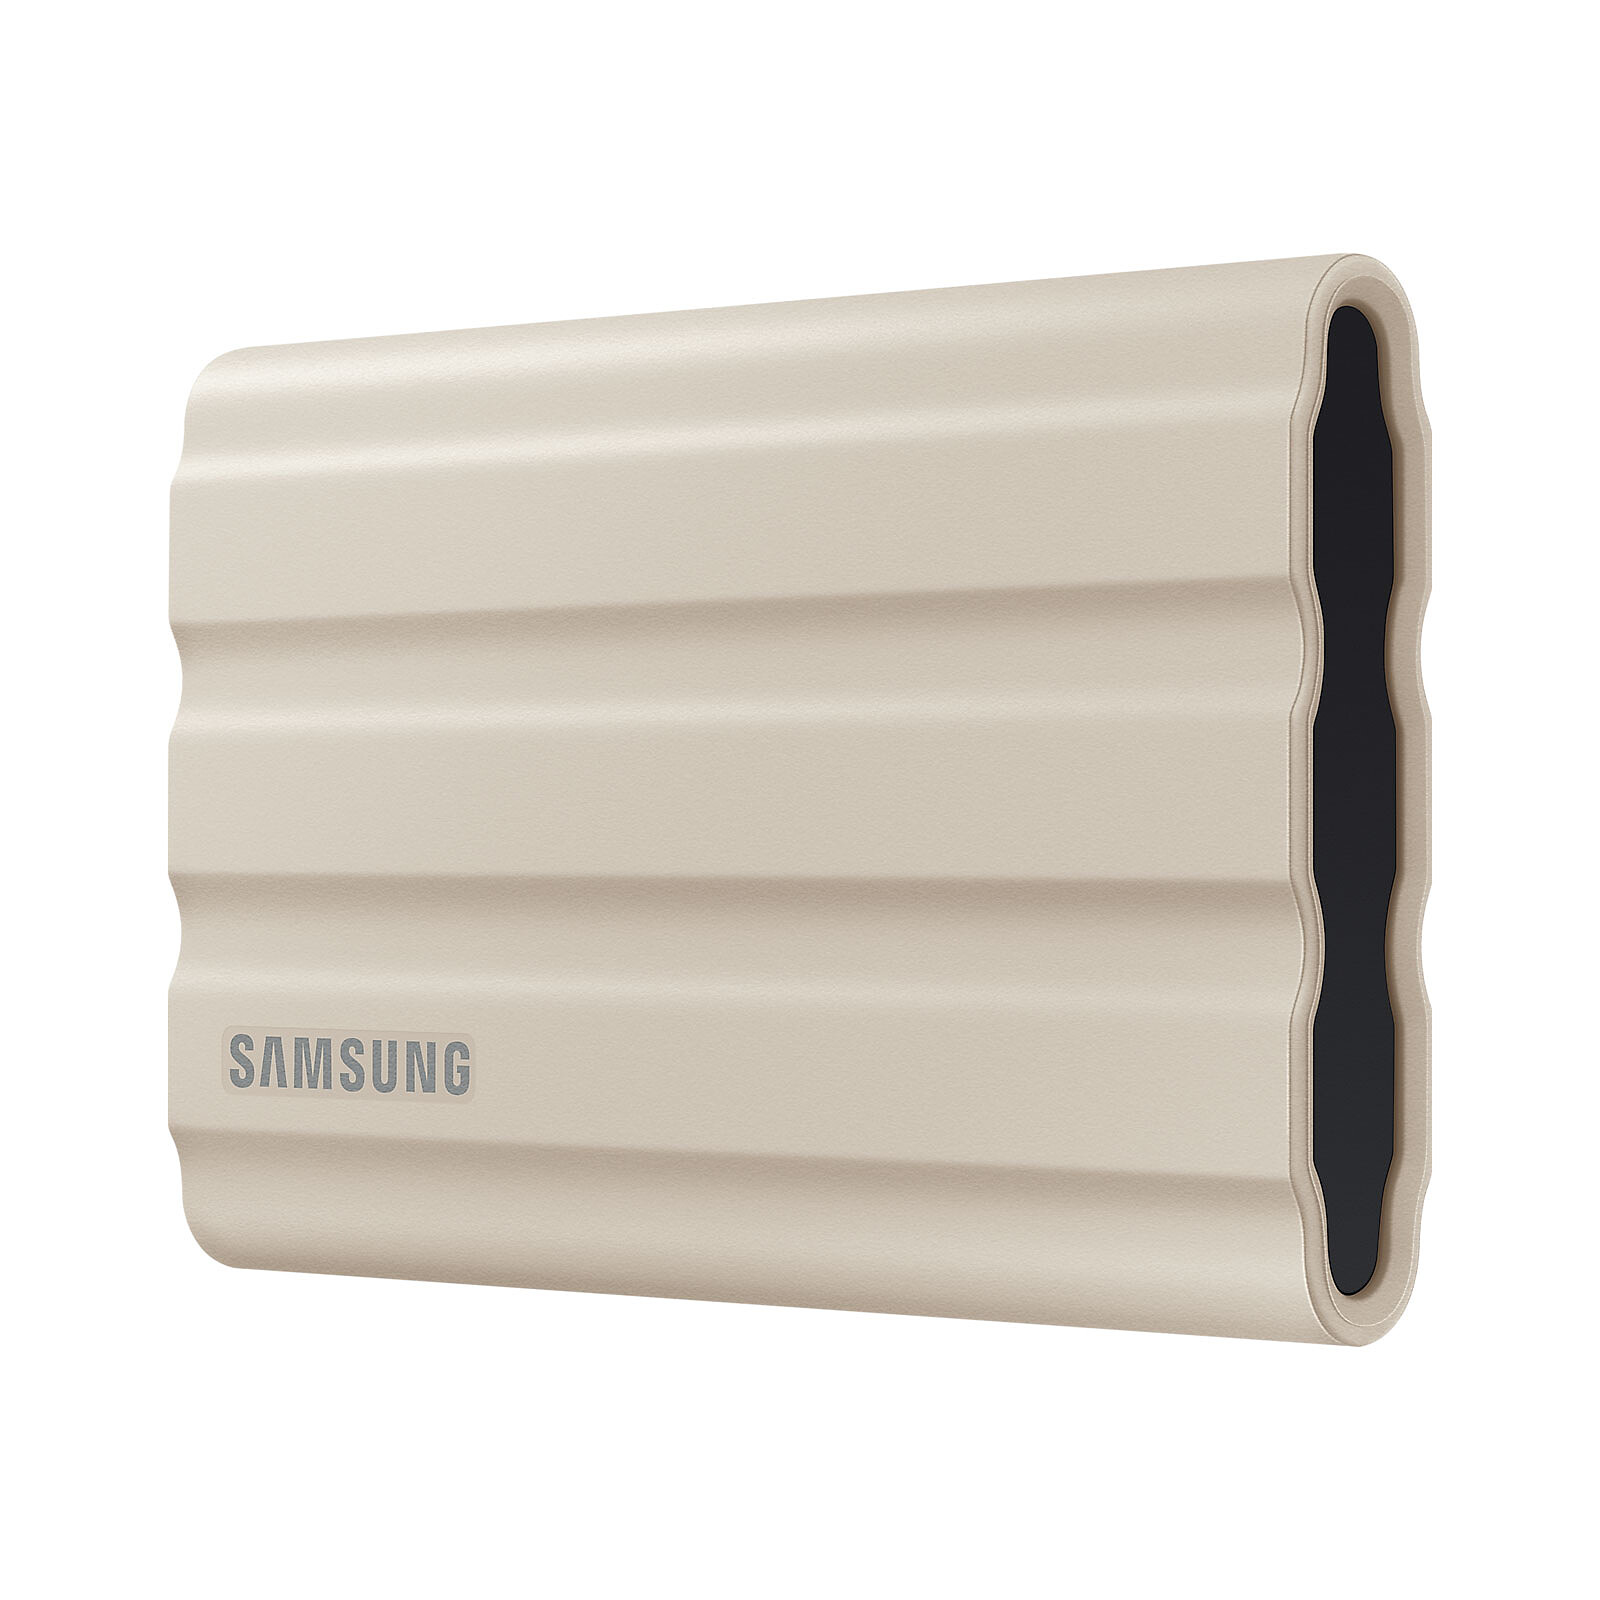 Disque dur ssd externe portable 2to t7 shield noir Samsung